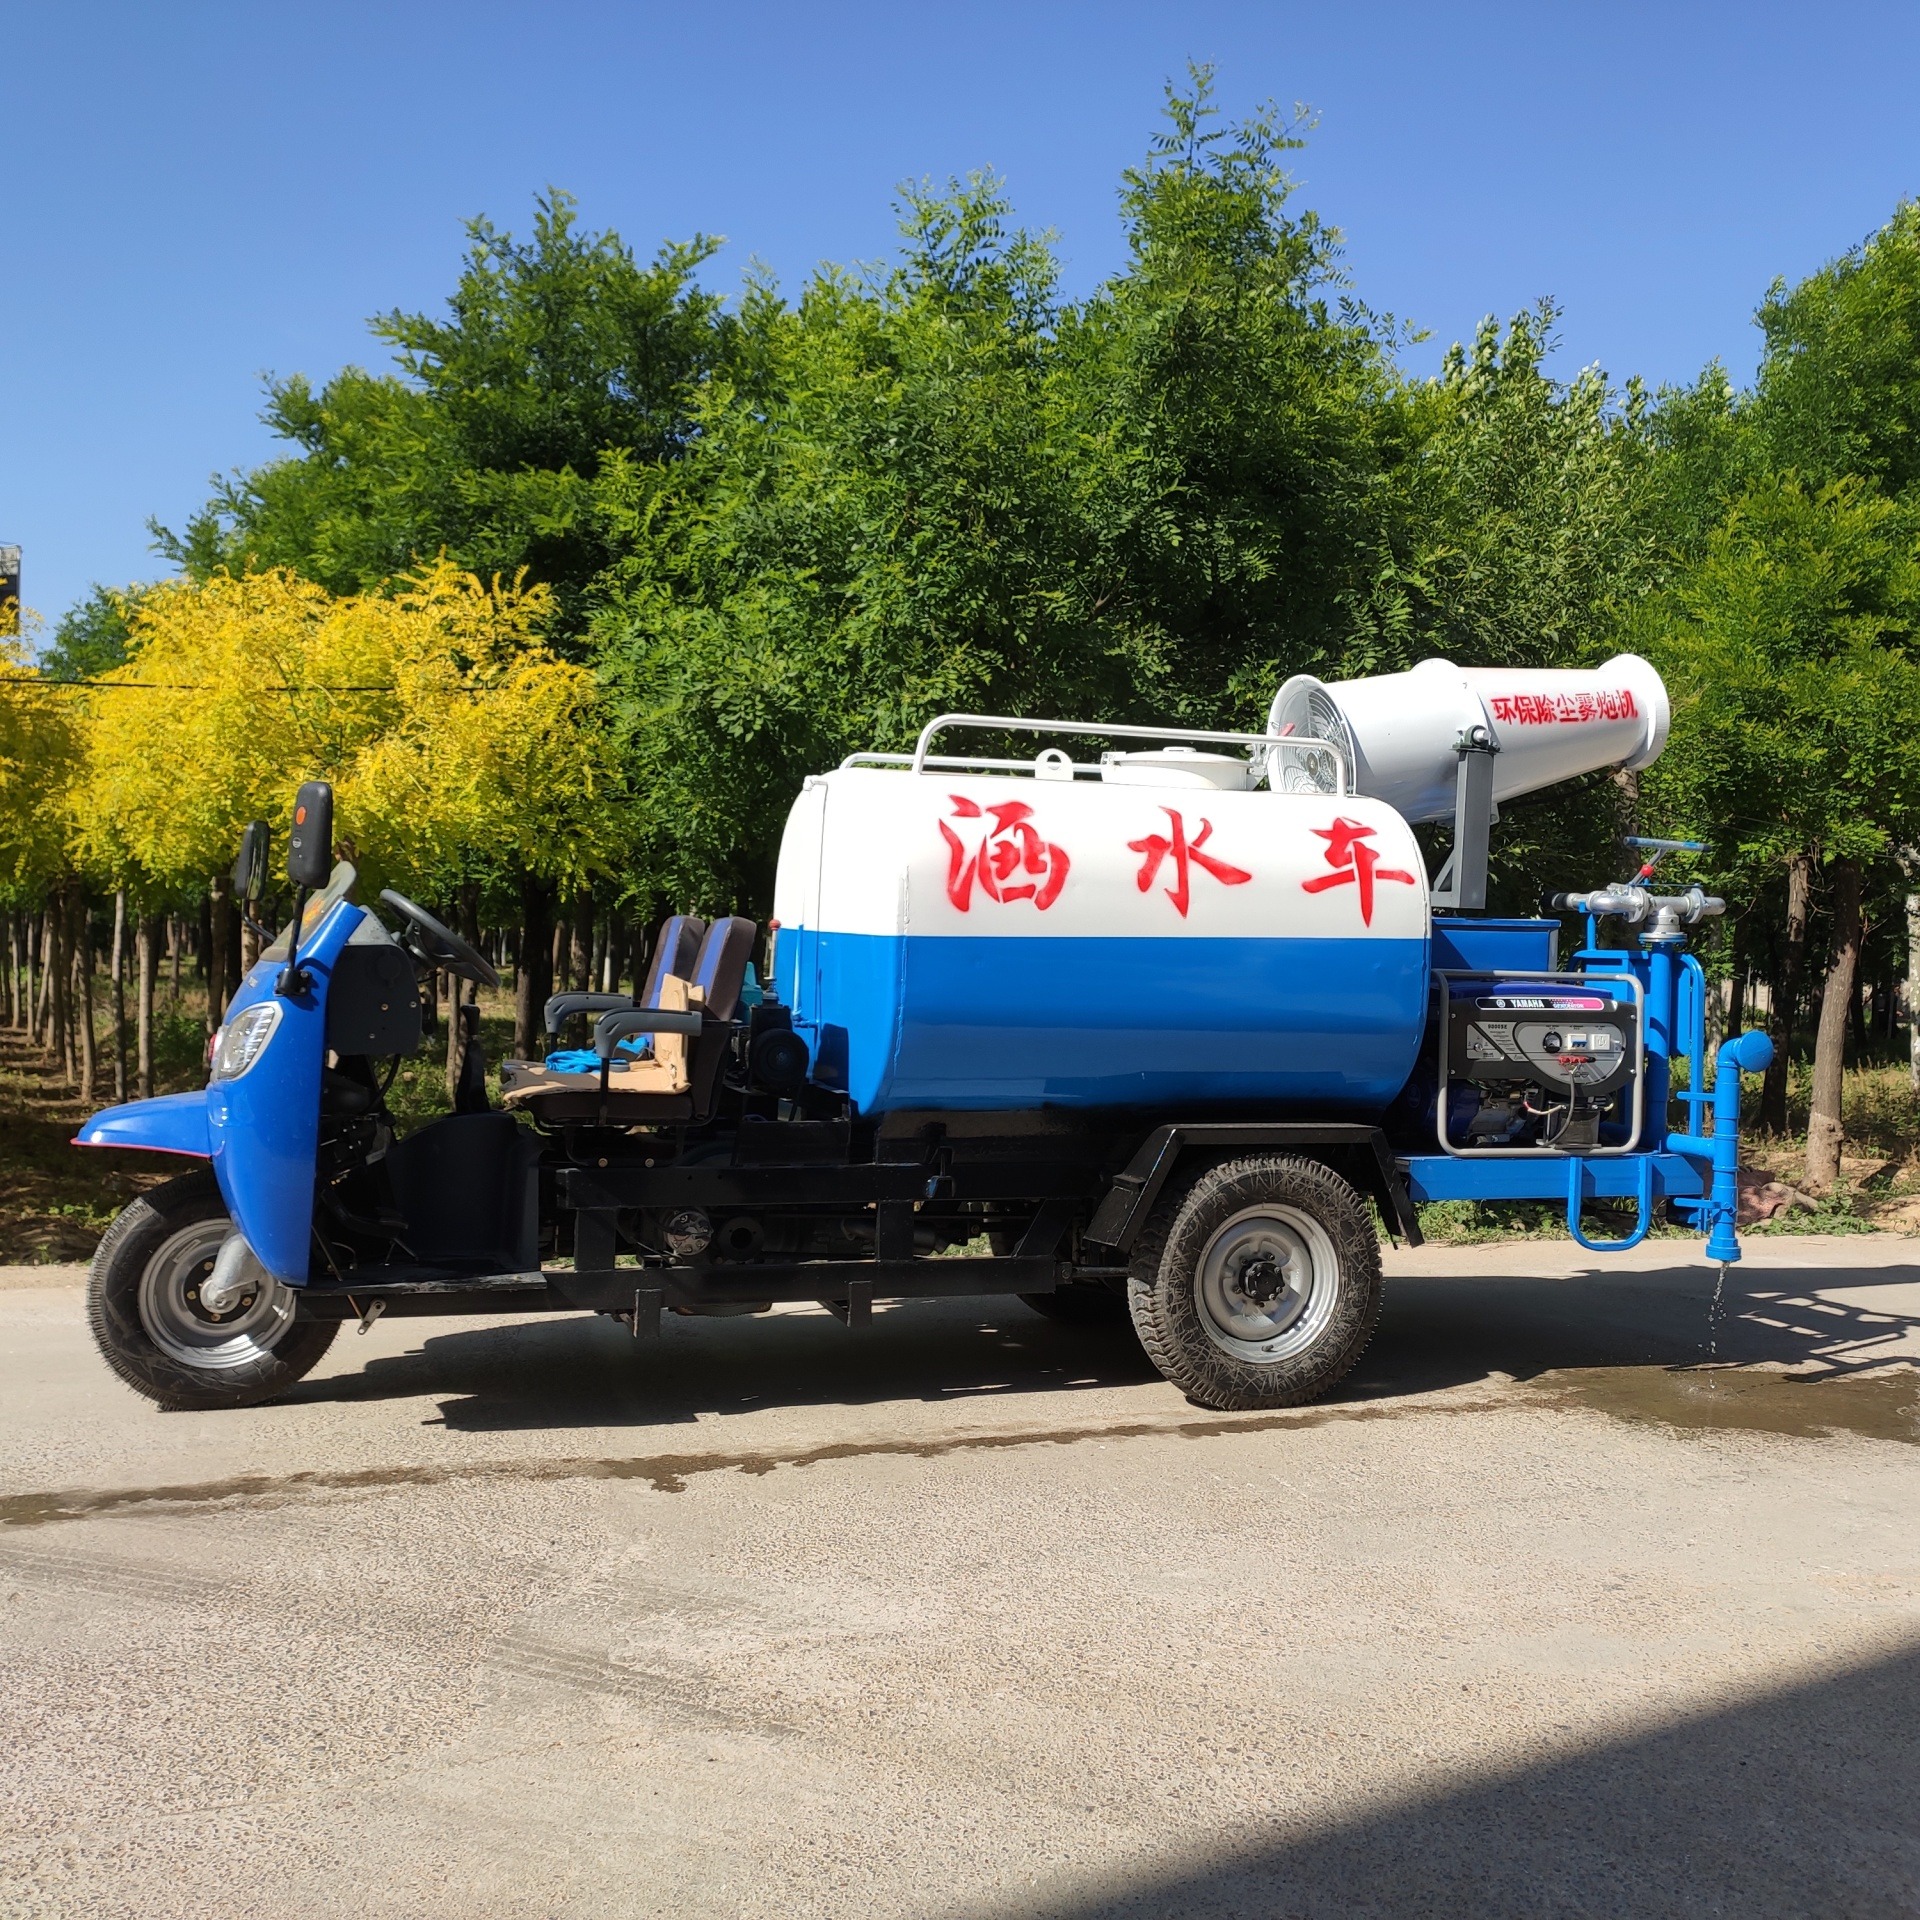 电动消防车 清洁路面 卫生防尘 适用于浇水喷洒树林 荣跃